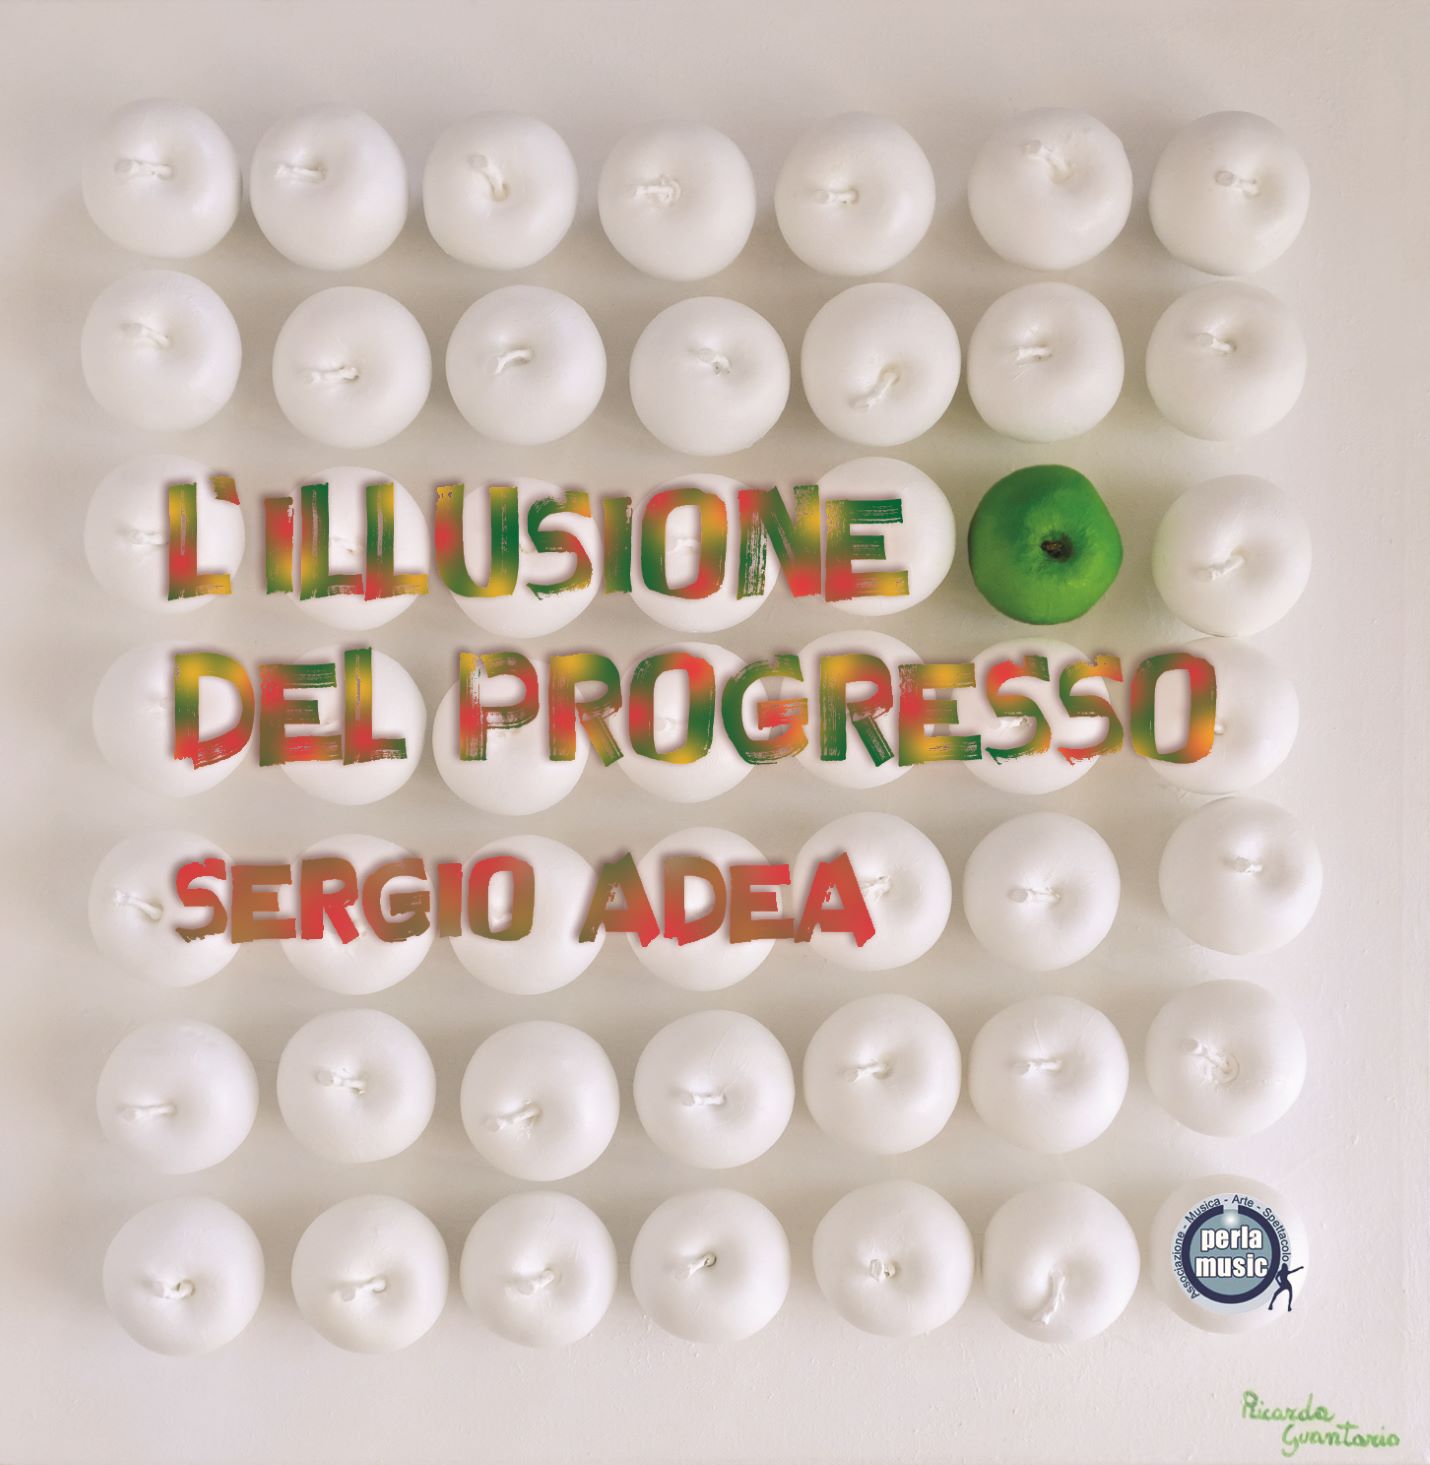 Sergio Adea - “L’illusione del progresso”